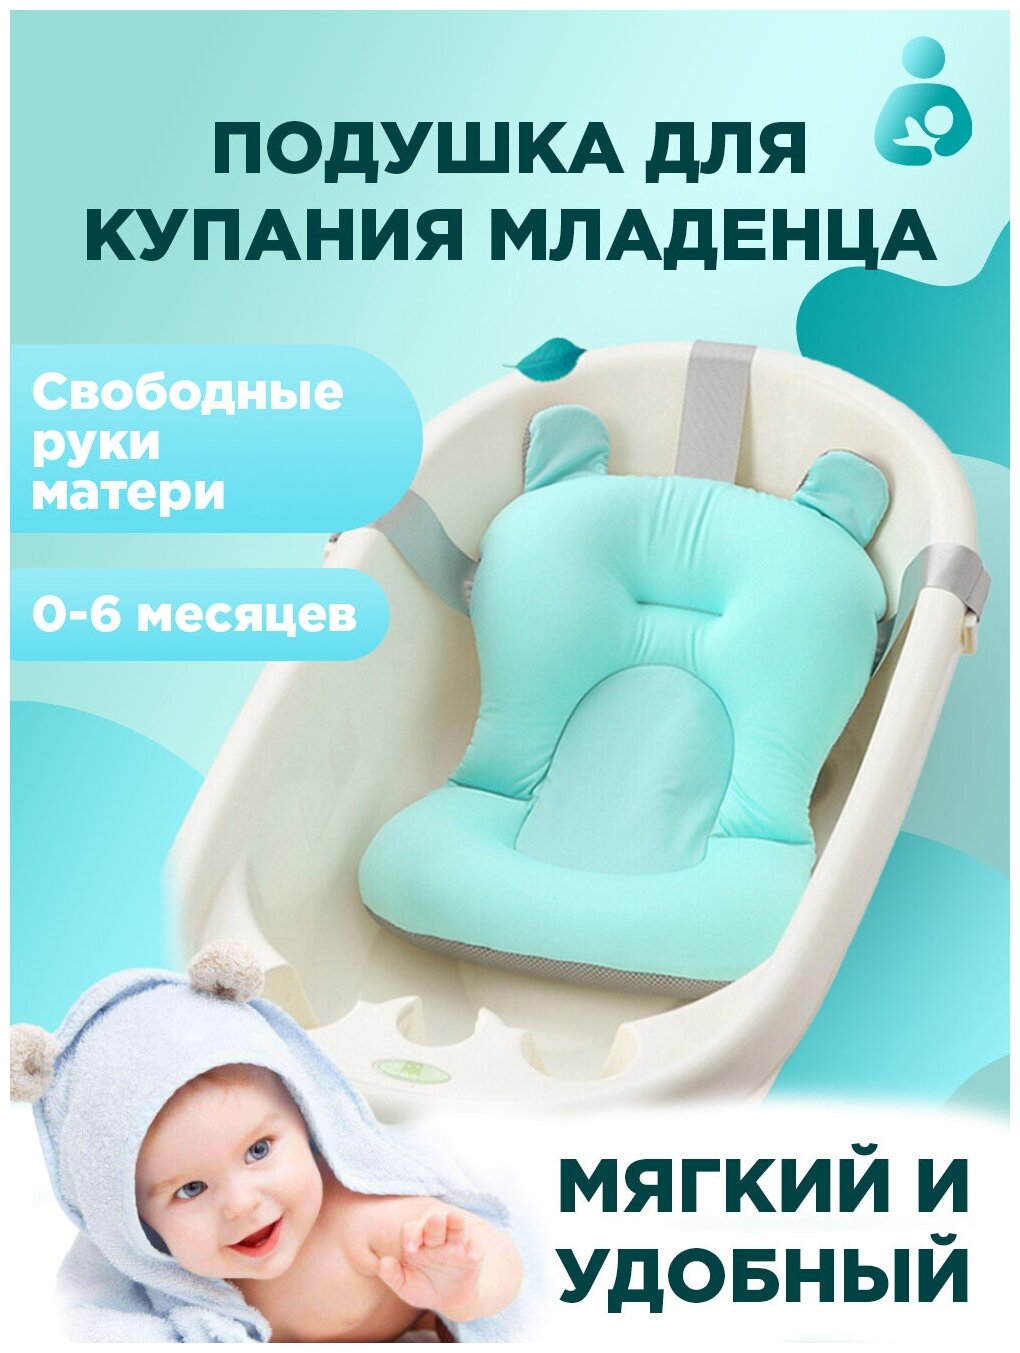 Детский коврик, матрасик для купания новорожденного, малыша и ребенка, гамак для купания с простым креплением в ванне, со складной мягкой подушкой